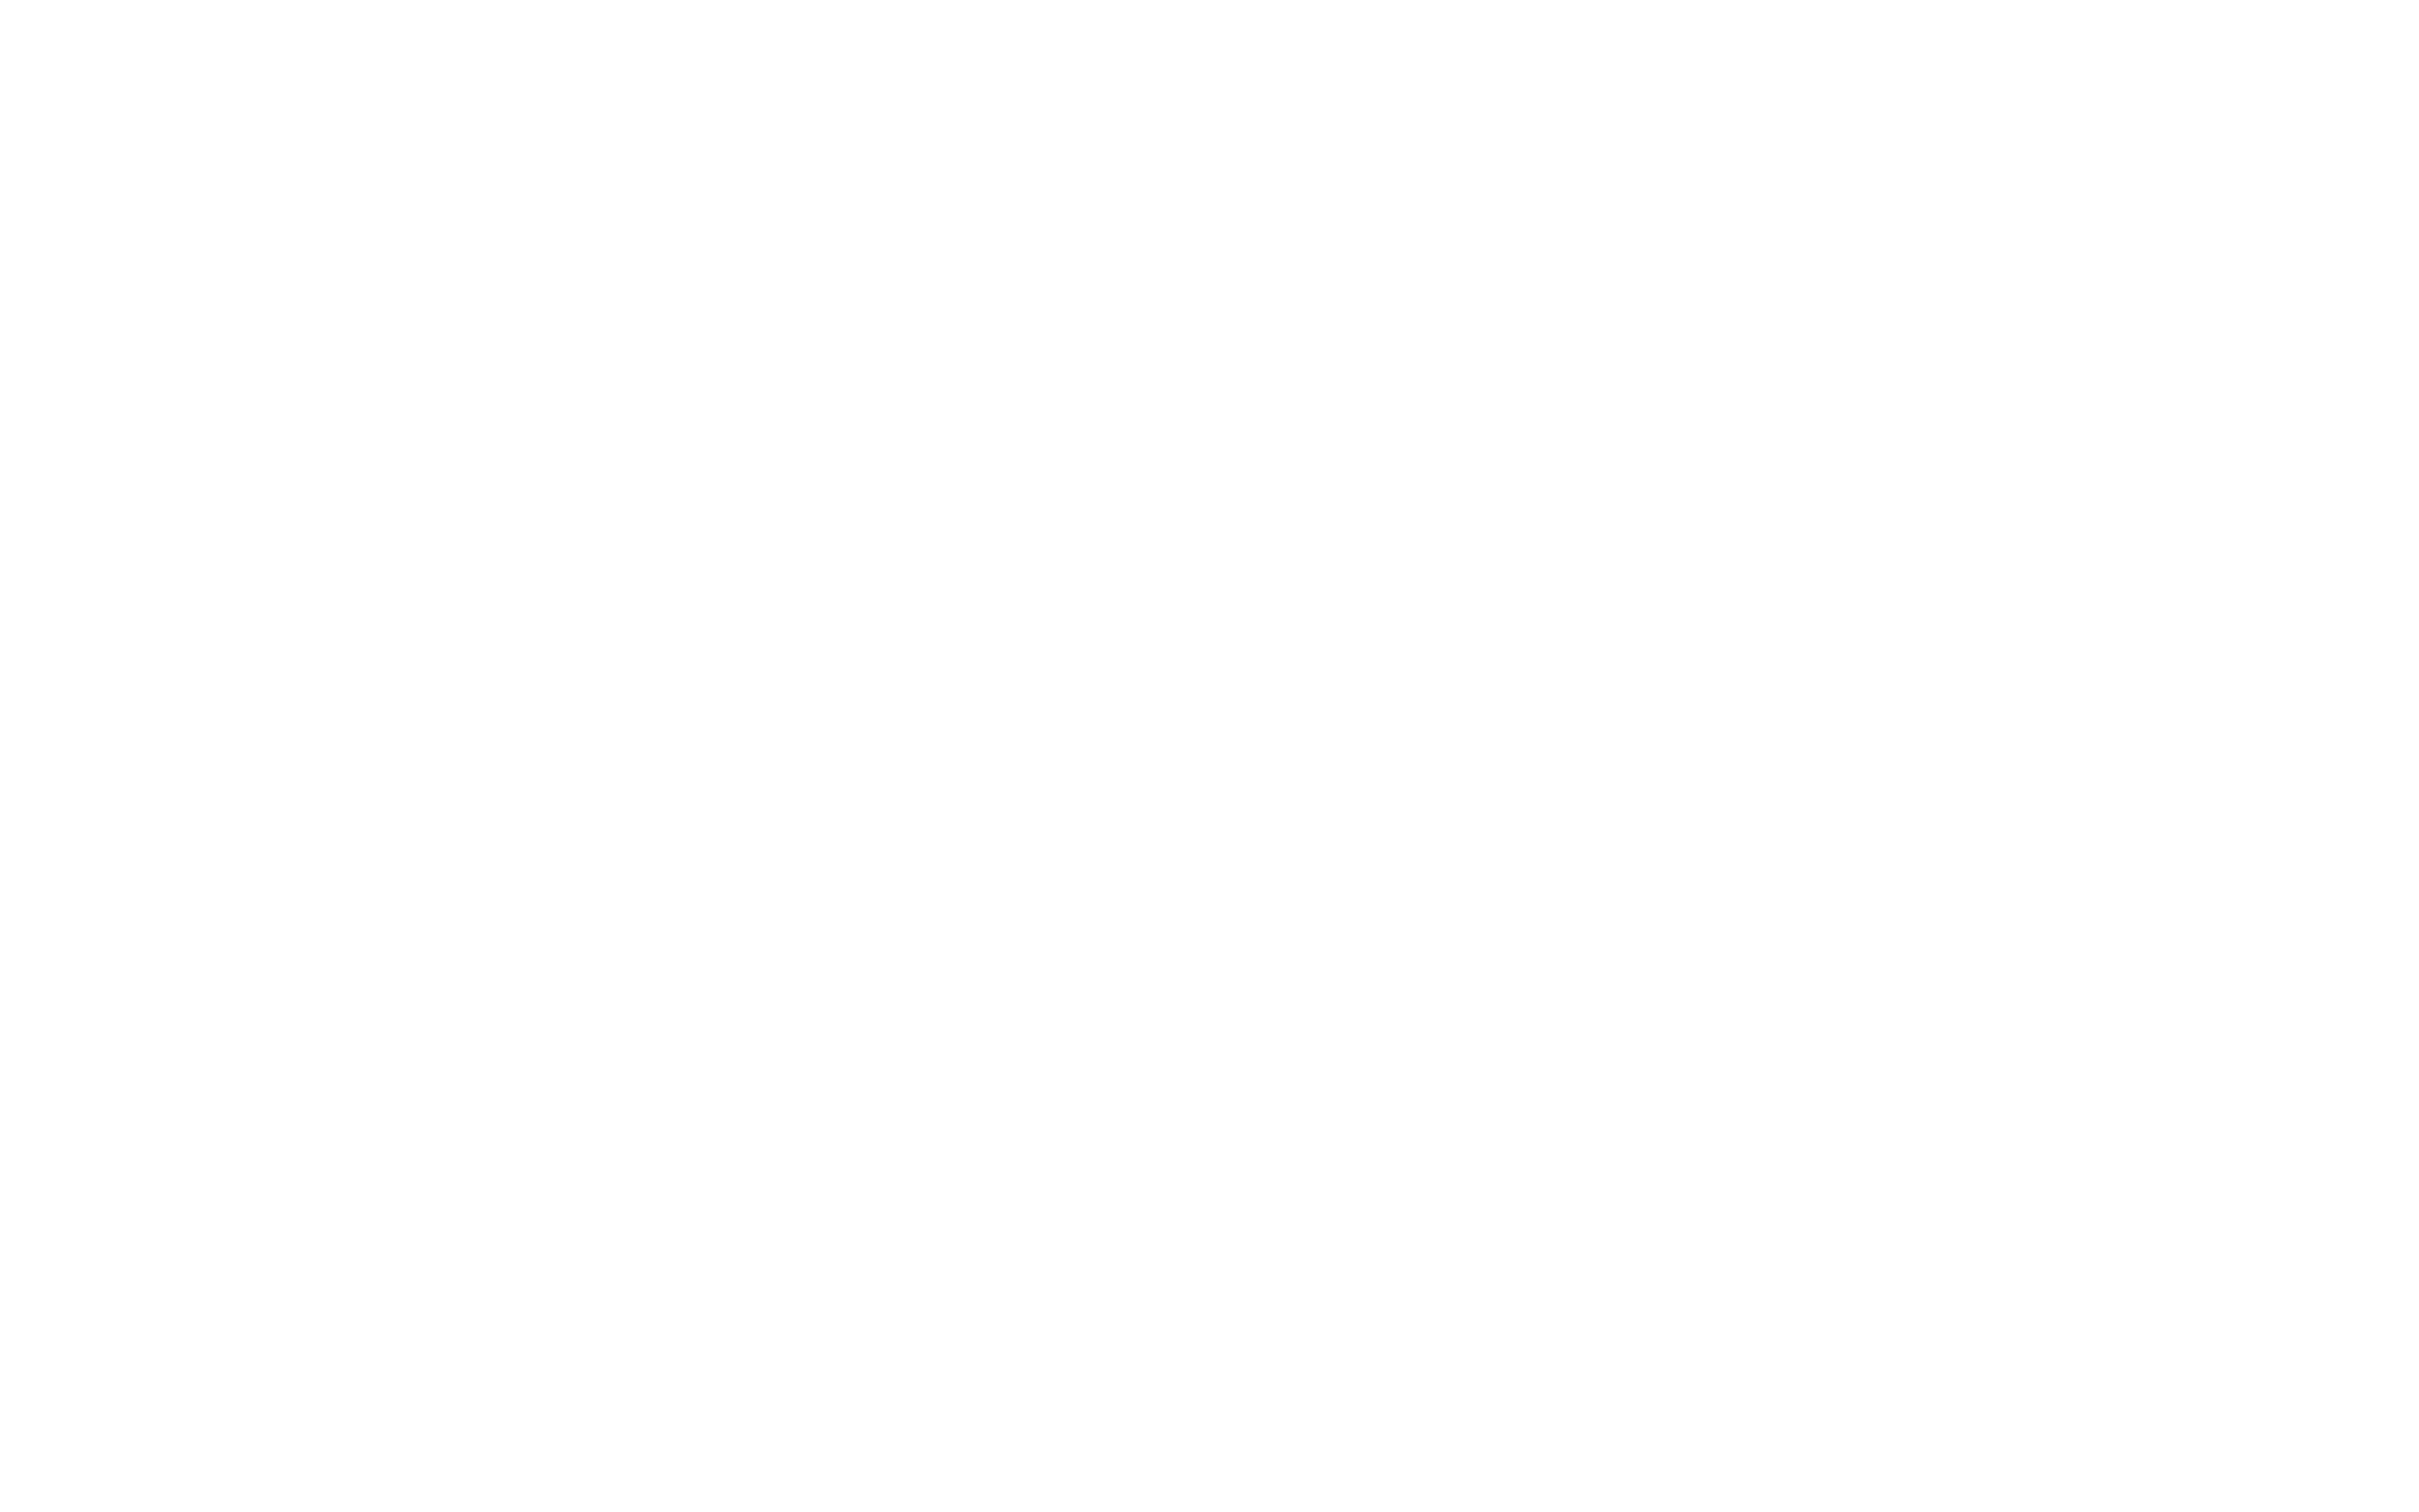 nisum-customer-white